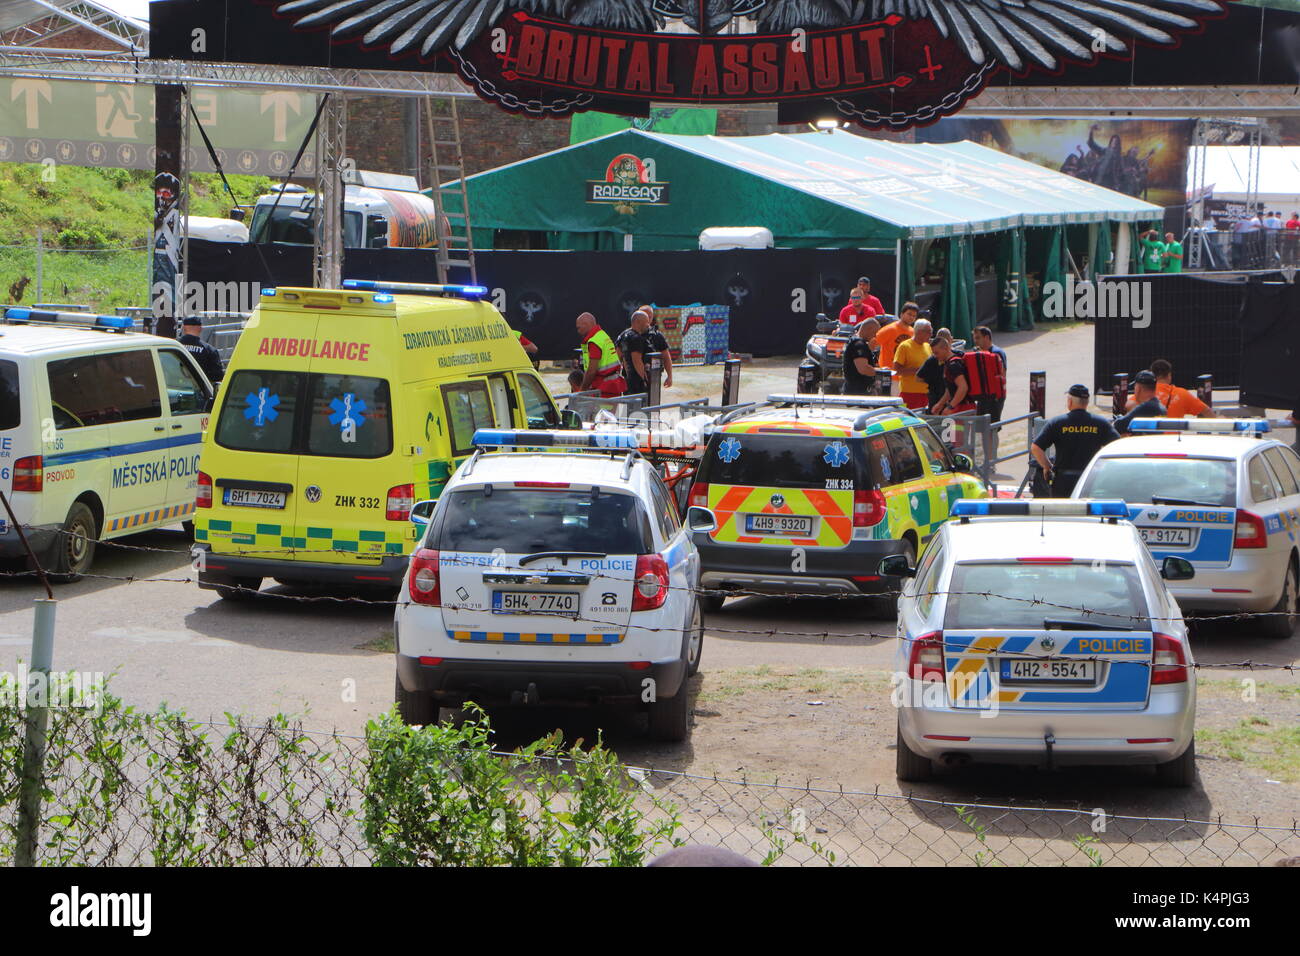 JAROMER - TSCHECHIEN: Polizei und Krankenwagen in der Nähe von Brutal Assault festival Eingang für die Evakuierung einer verletzten Person, August 09, 2017 Stockfoto